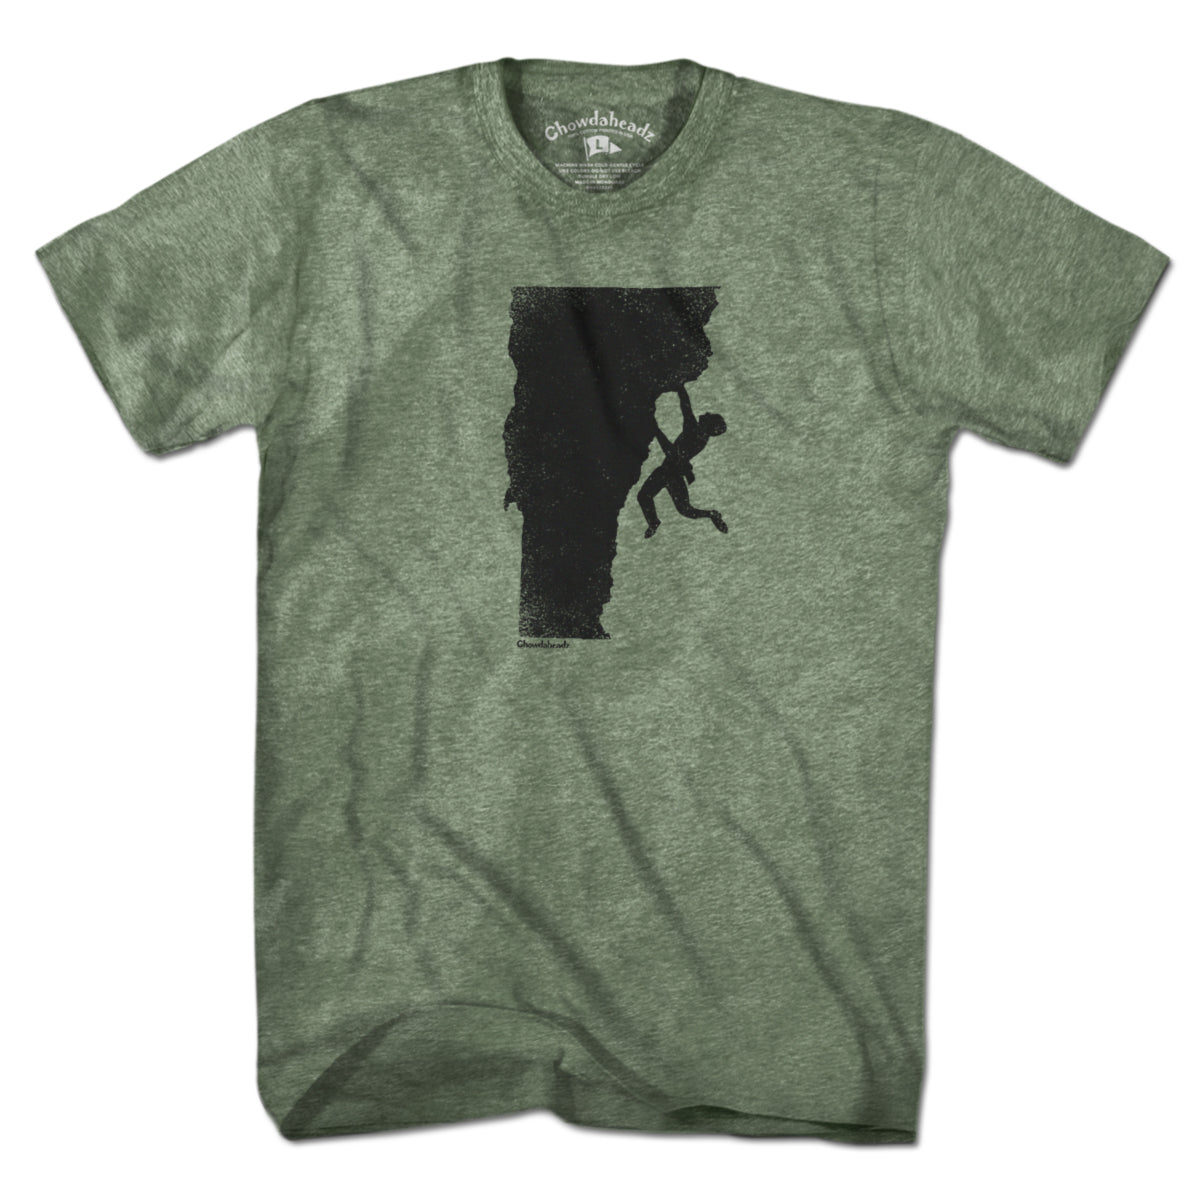 Vermont Rock Climber T-Shirt - Chowdaheadz